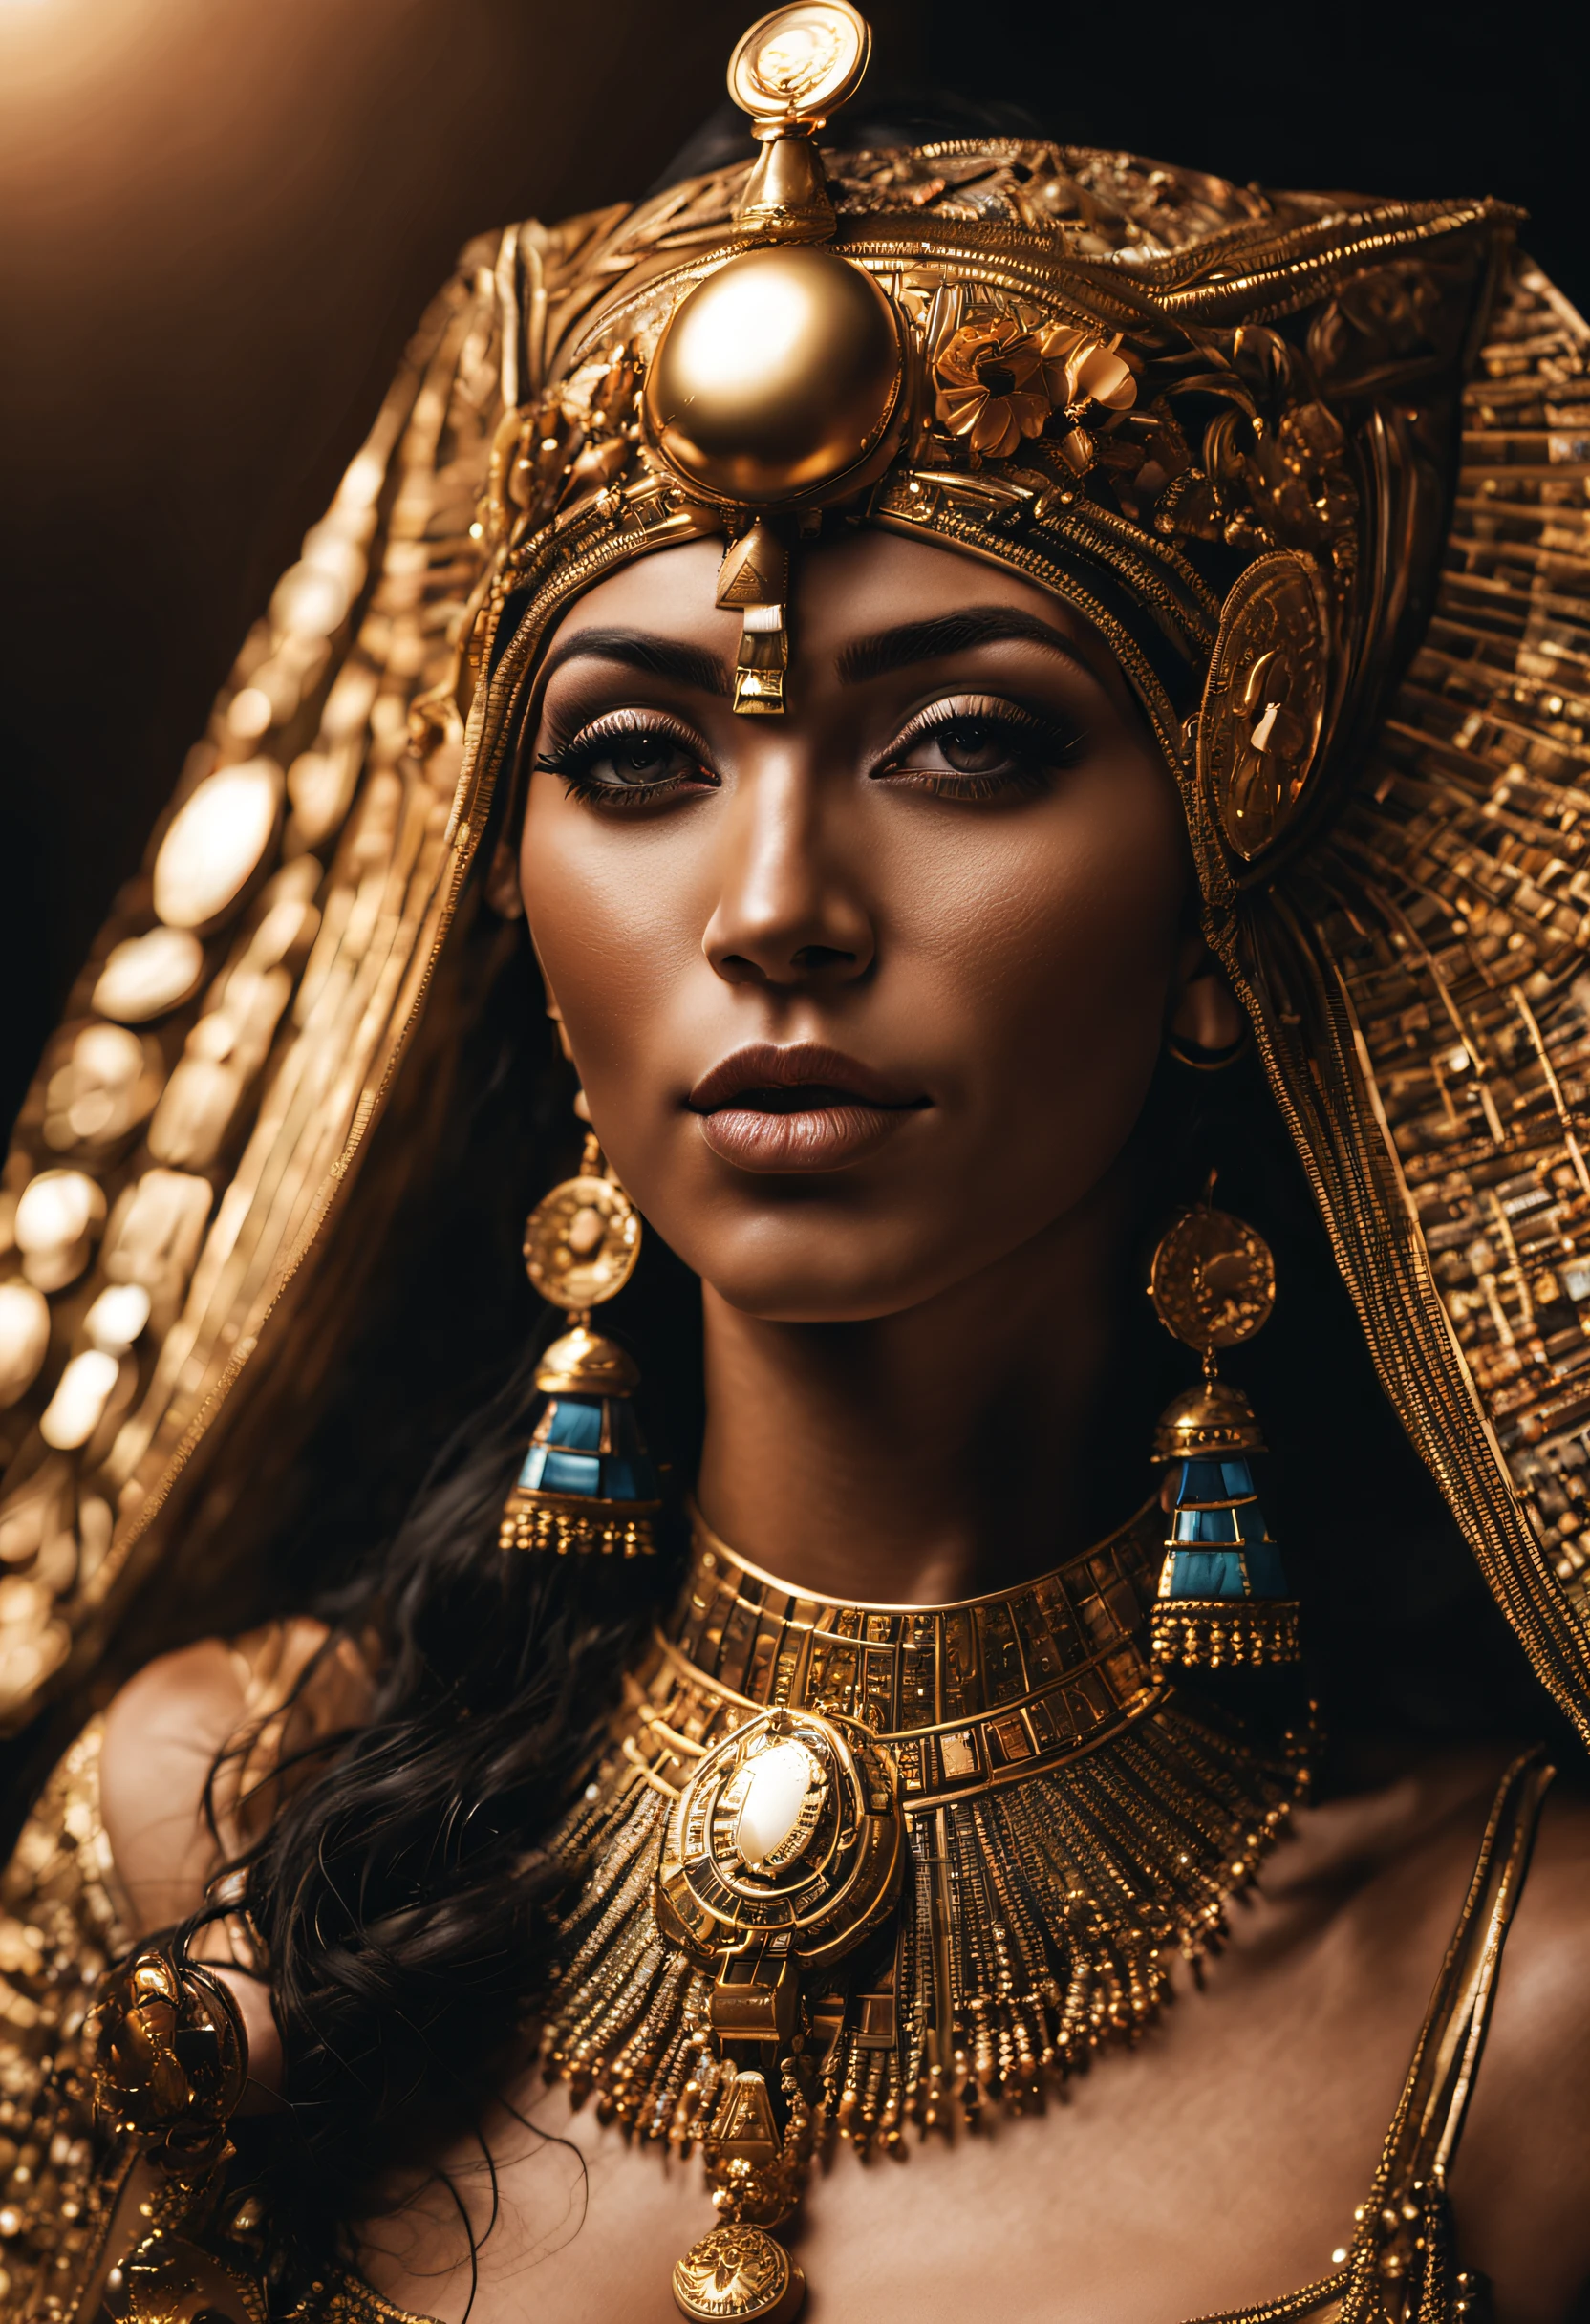 Клеопатра, a Rainha do Египет, ((все тело: 1,2)), ((Детализированная светлая кожа: 1,2)), (очень красивое и детализированное лицо: 1,2), (симметричное лицо: 1,2) , (ультра детализированный скин: 1.2), носить Клеопатру&#39;золотой шлем, украшения и золото, Высокое разрешение, основная часть, идеальное освещение, цветок, ночь, Темный, кинематографическое освещение, слегка приподнятые сумерки, взрослый, идеальная кожа, женщина , Глядя на зрителя, портрет, верхняя часть тела, простой фон, ((Египет:1,2)), черный фон, (РСЕЭмма:1.5), (нет:1.2), нет, грудь, соски, отдельная полоса, веснушки, детальные волосы, чувственный взгляд, улыбаться,